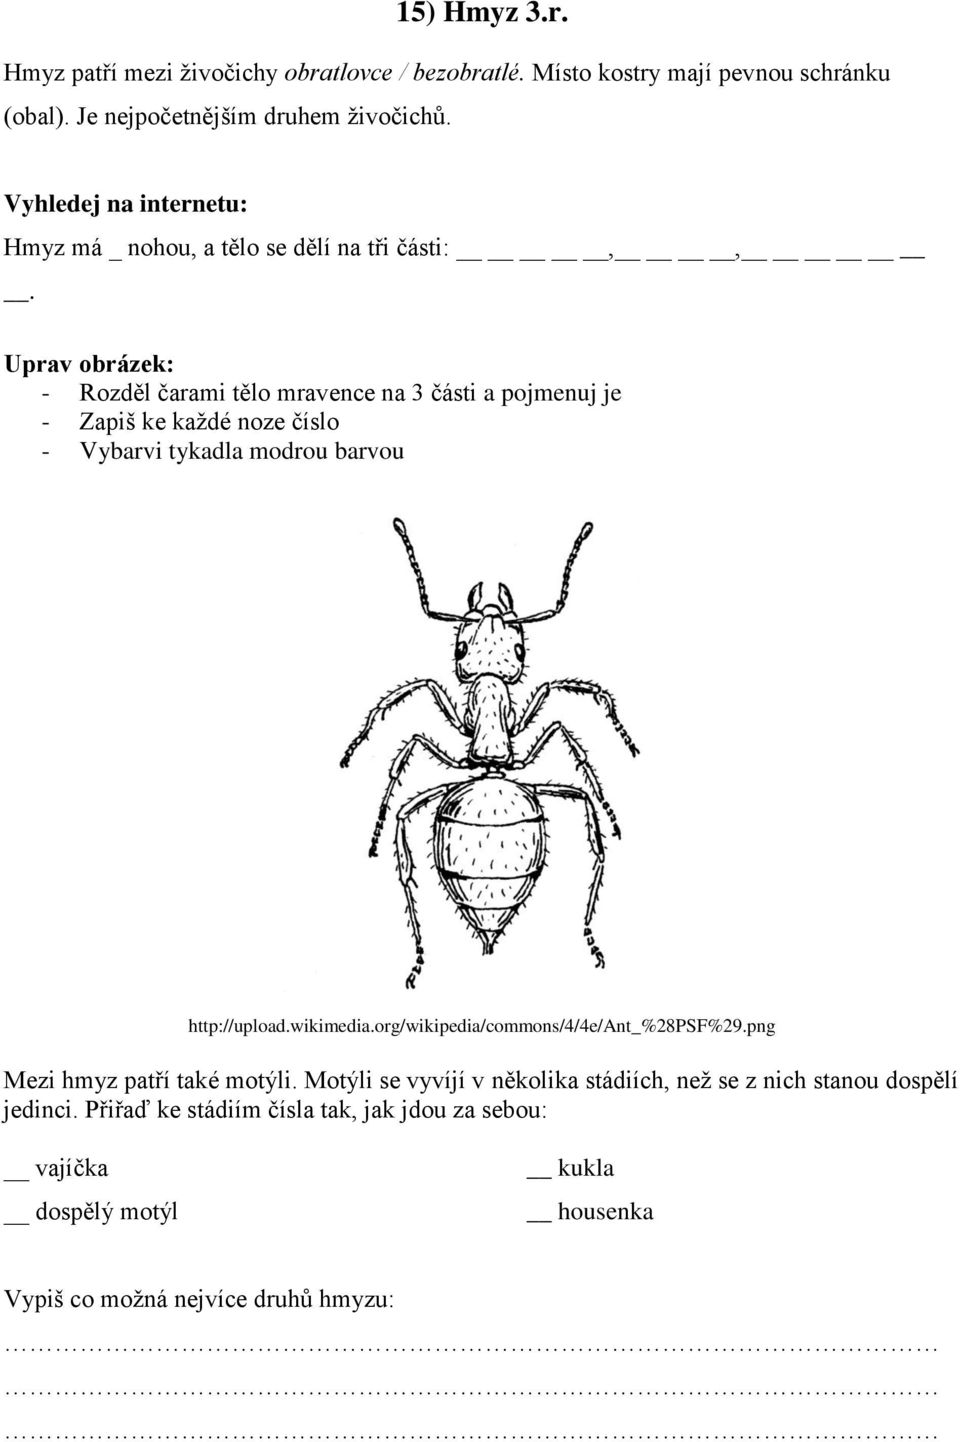 Uprav obrázek: - Rozděl čarami tělo mravence na 3 části a pojmenuj je - Zapiš ke každé noze číslo - Vybarvi tykadla modrou barvou http://upload.wikimedia.